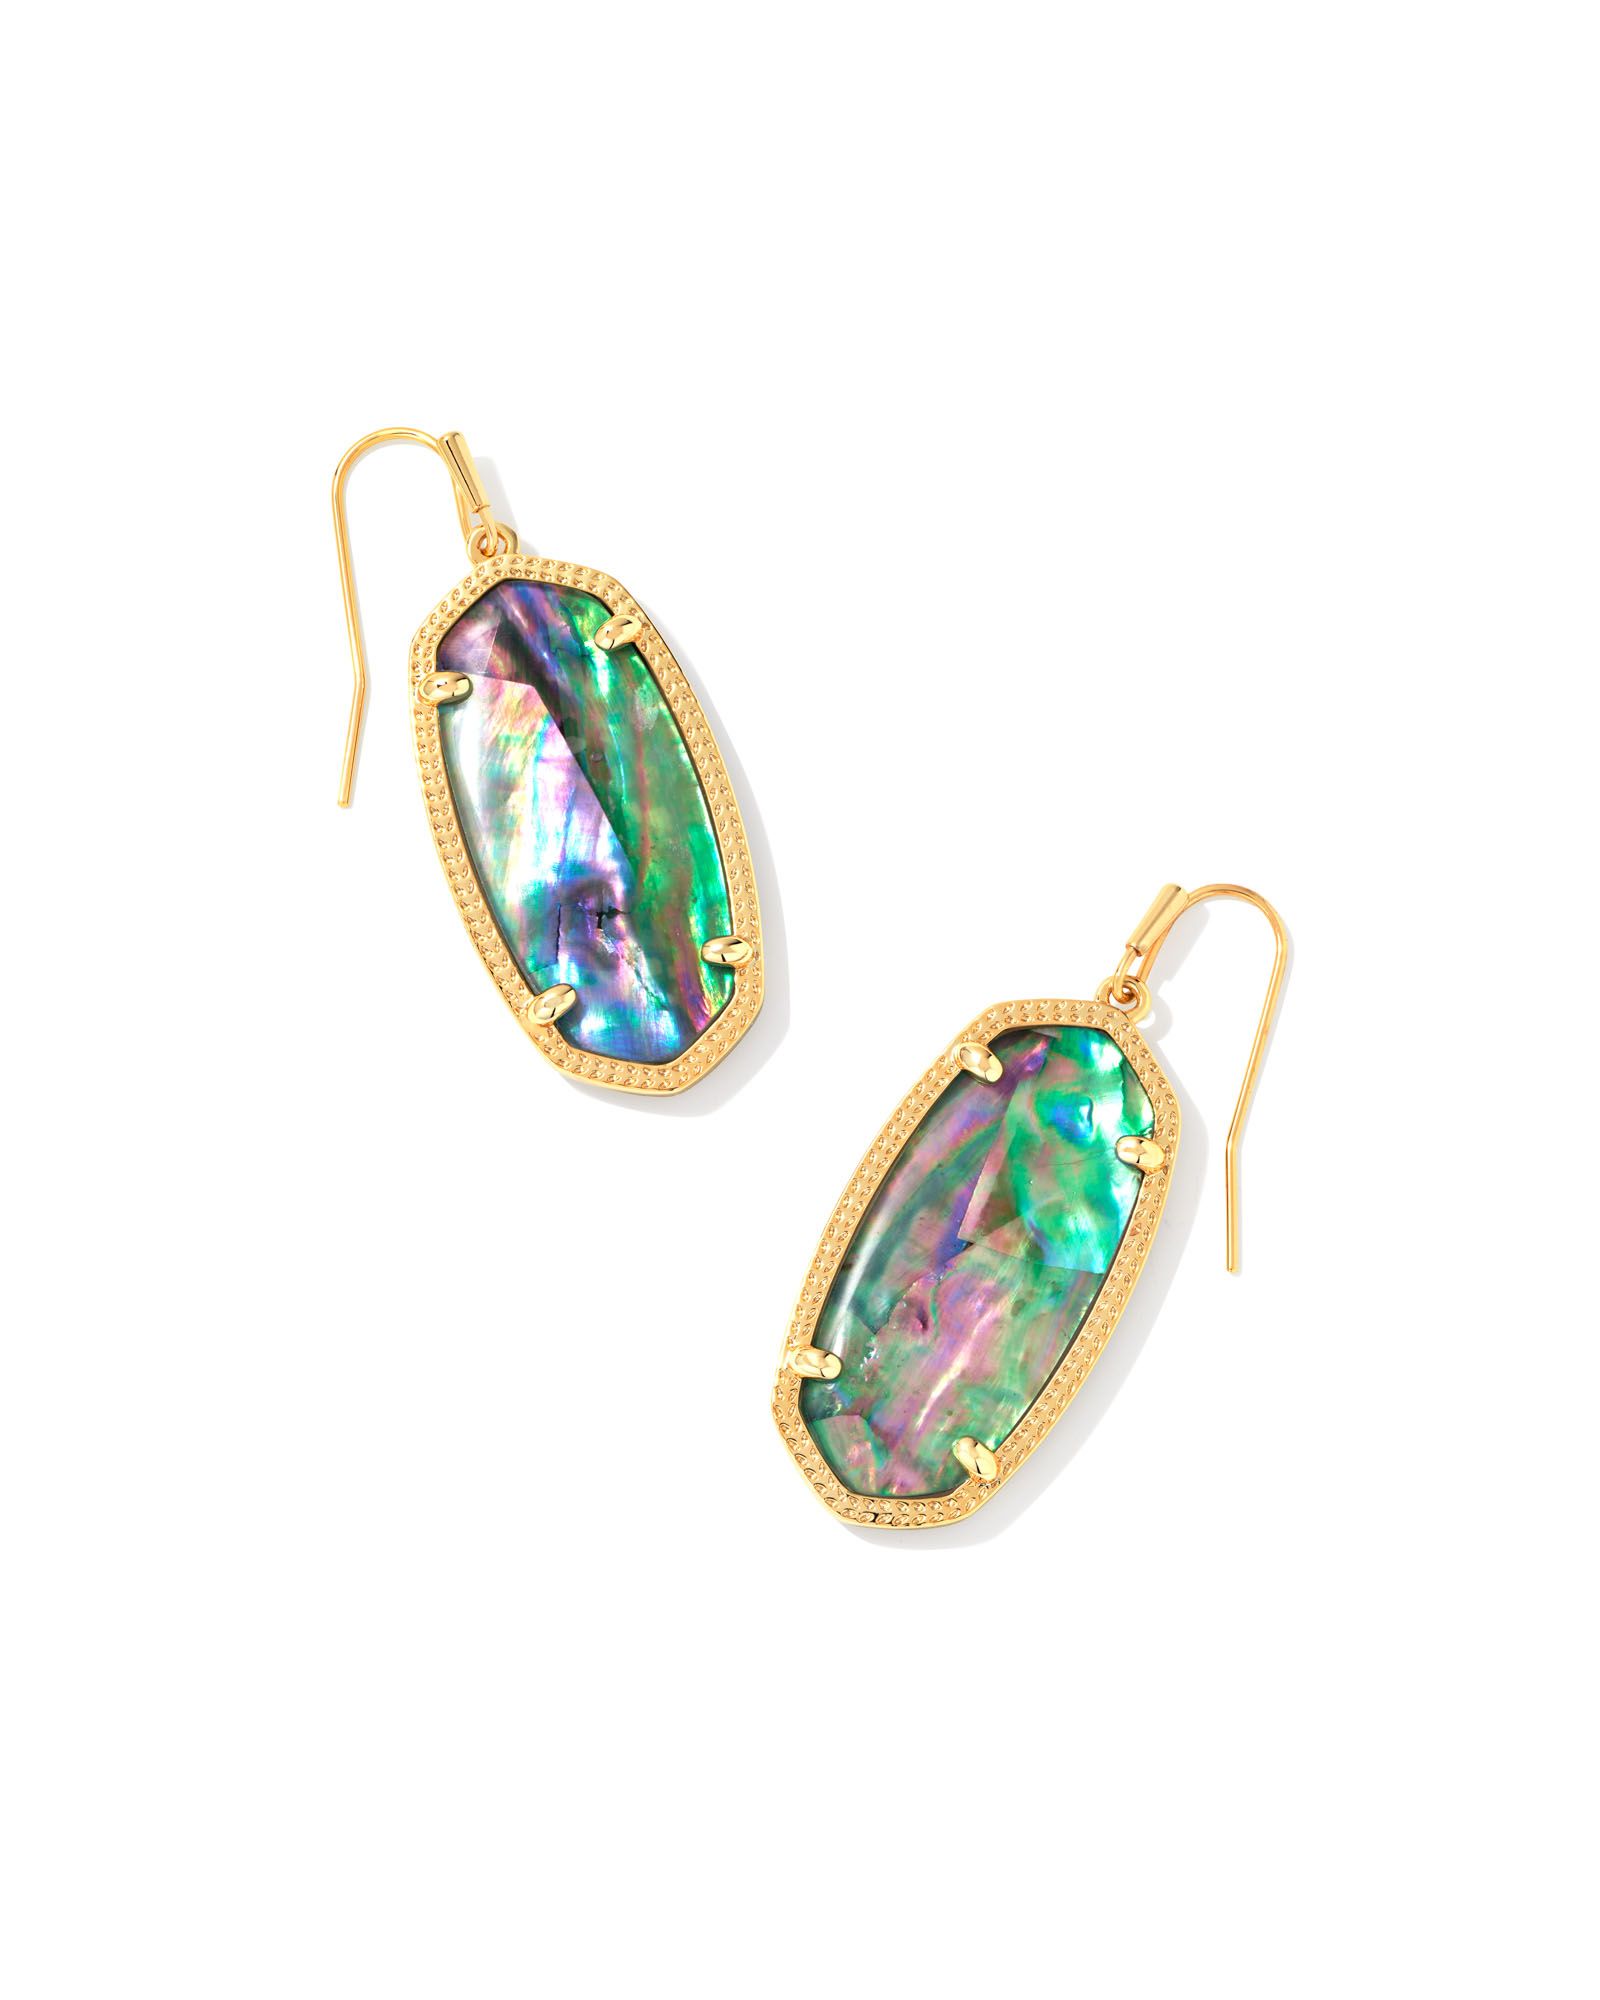 Elle Gold Drop Earrings in Lilac Abalone | Kendra Scott | Kendra Scott